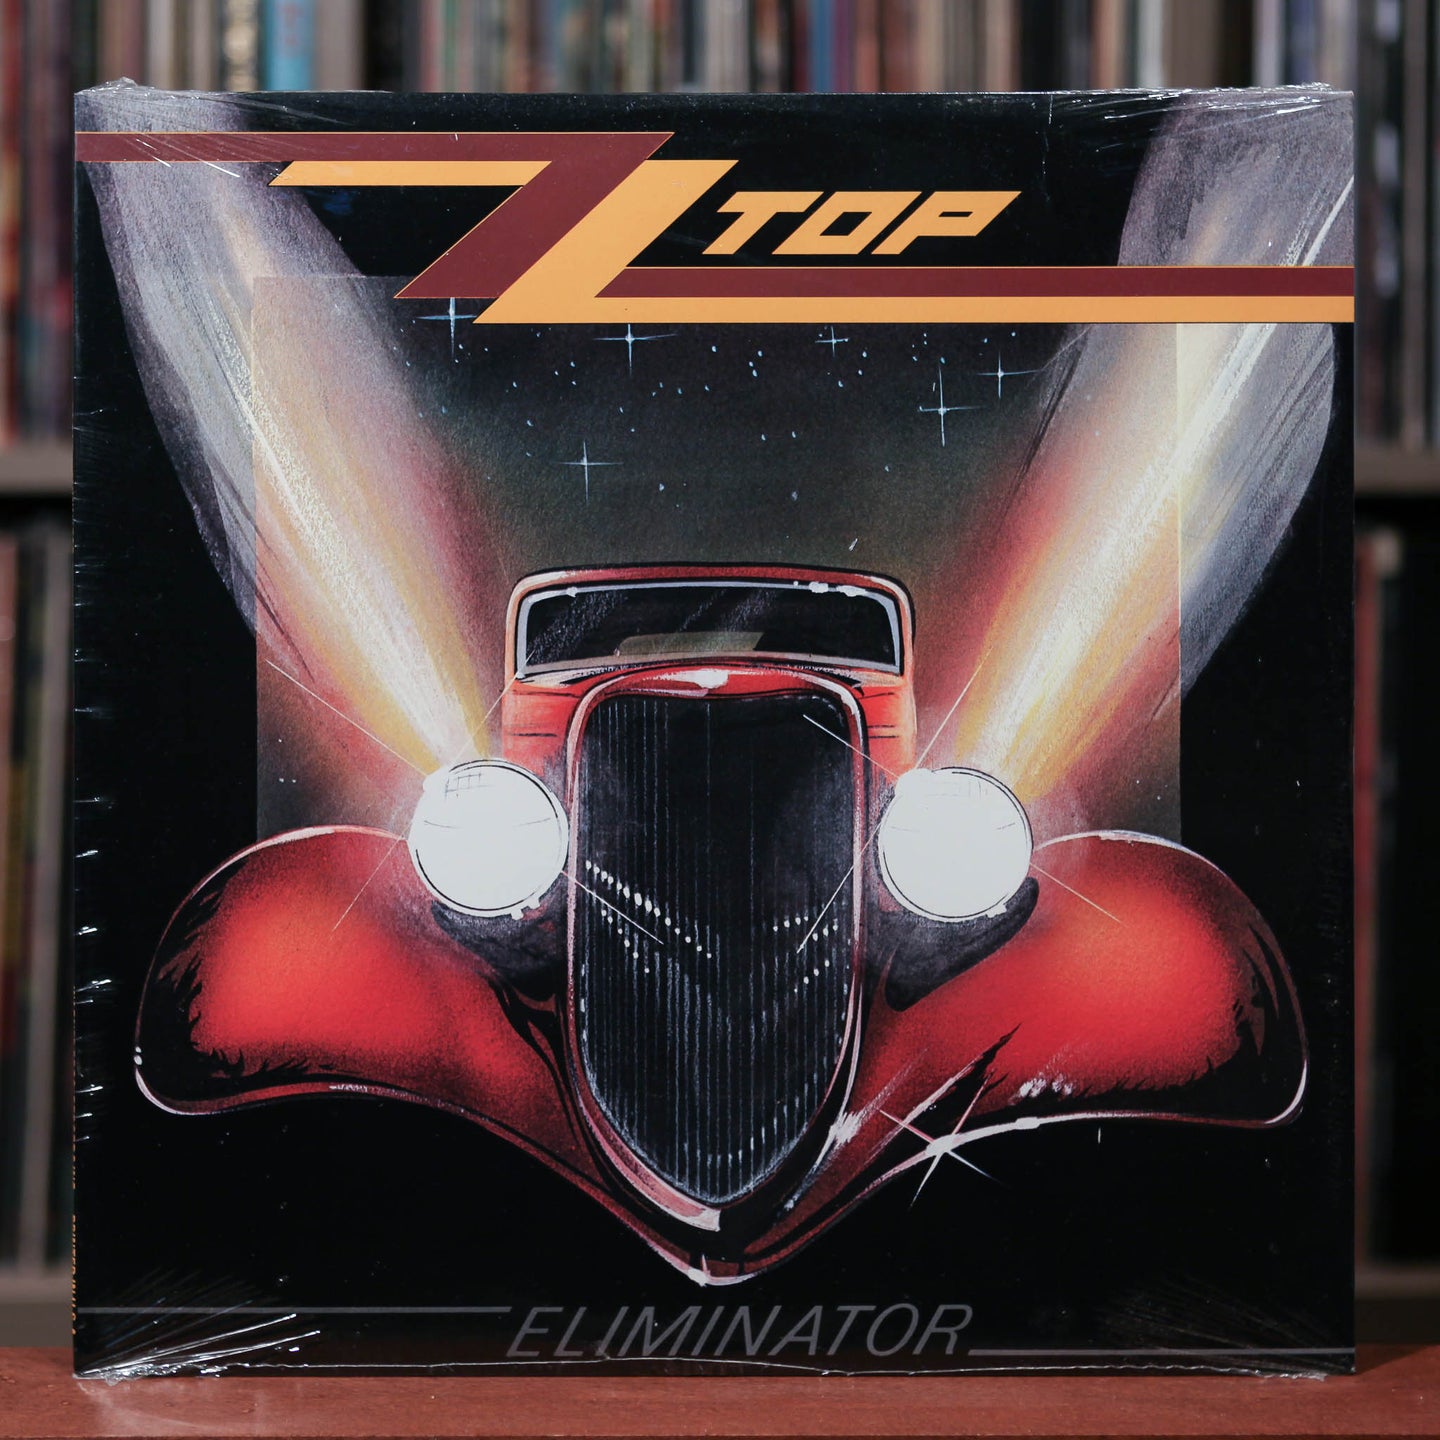 ZZ Top - Eliminator - 1983 Warner, SEALED